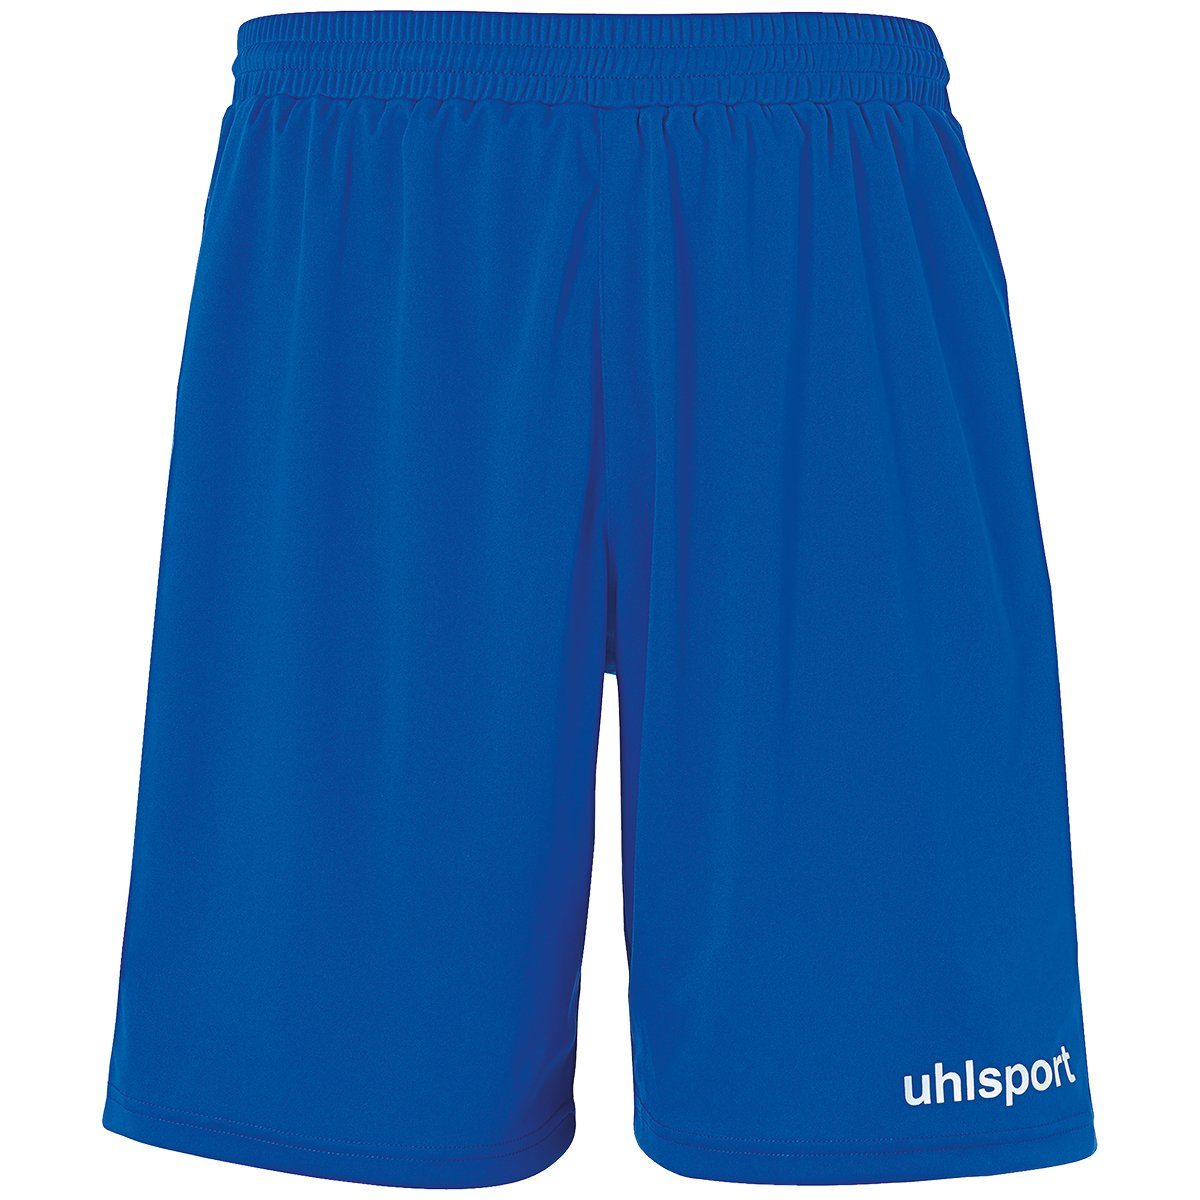 uhlsport Shorts uhlsport Shorts PERFORMANCE SHORTS azurblau/weiß | Shorts